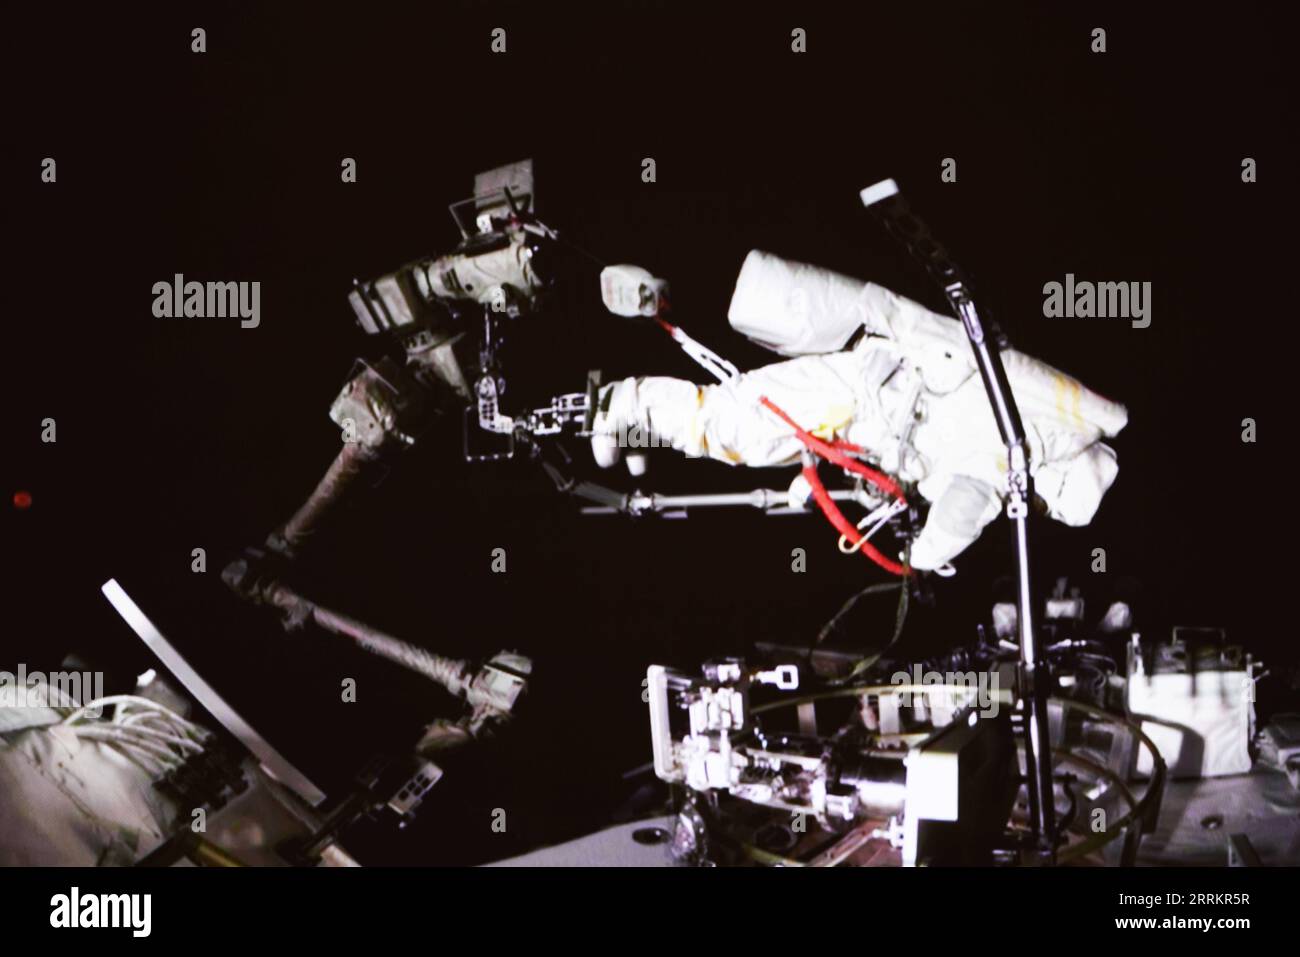 220917 -- PECHINO, 17 settembre 2022 -- immagine dello schermo catturata al Beijing Aerospace Control Center il 17 settembre 2022 mostra Shenzhou-14 astronauta Cai Xuzhe che conduce attività extravehicular EVAs. Gli astronauti cinesi Cai Xuzhe e Chen Dong sono usciti con successo dal modulo di laboratorio della stazione spaziale Wentian sabato per condurre EVA, secondo la China Manned Space Agency CMSA. EyesonSciCHINA-WENTIAN-SHENZHOU-14 ASTRONONAUTS-EXTRAVEHICULAR ACTIVITIES CN GuoxZhongzheng PUBLICATIONxNOTxINxCHN Foto Stock